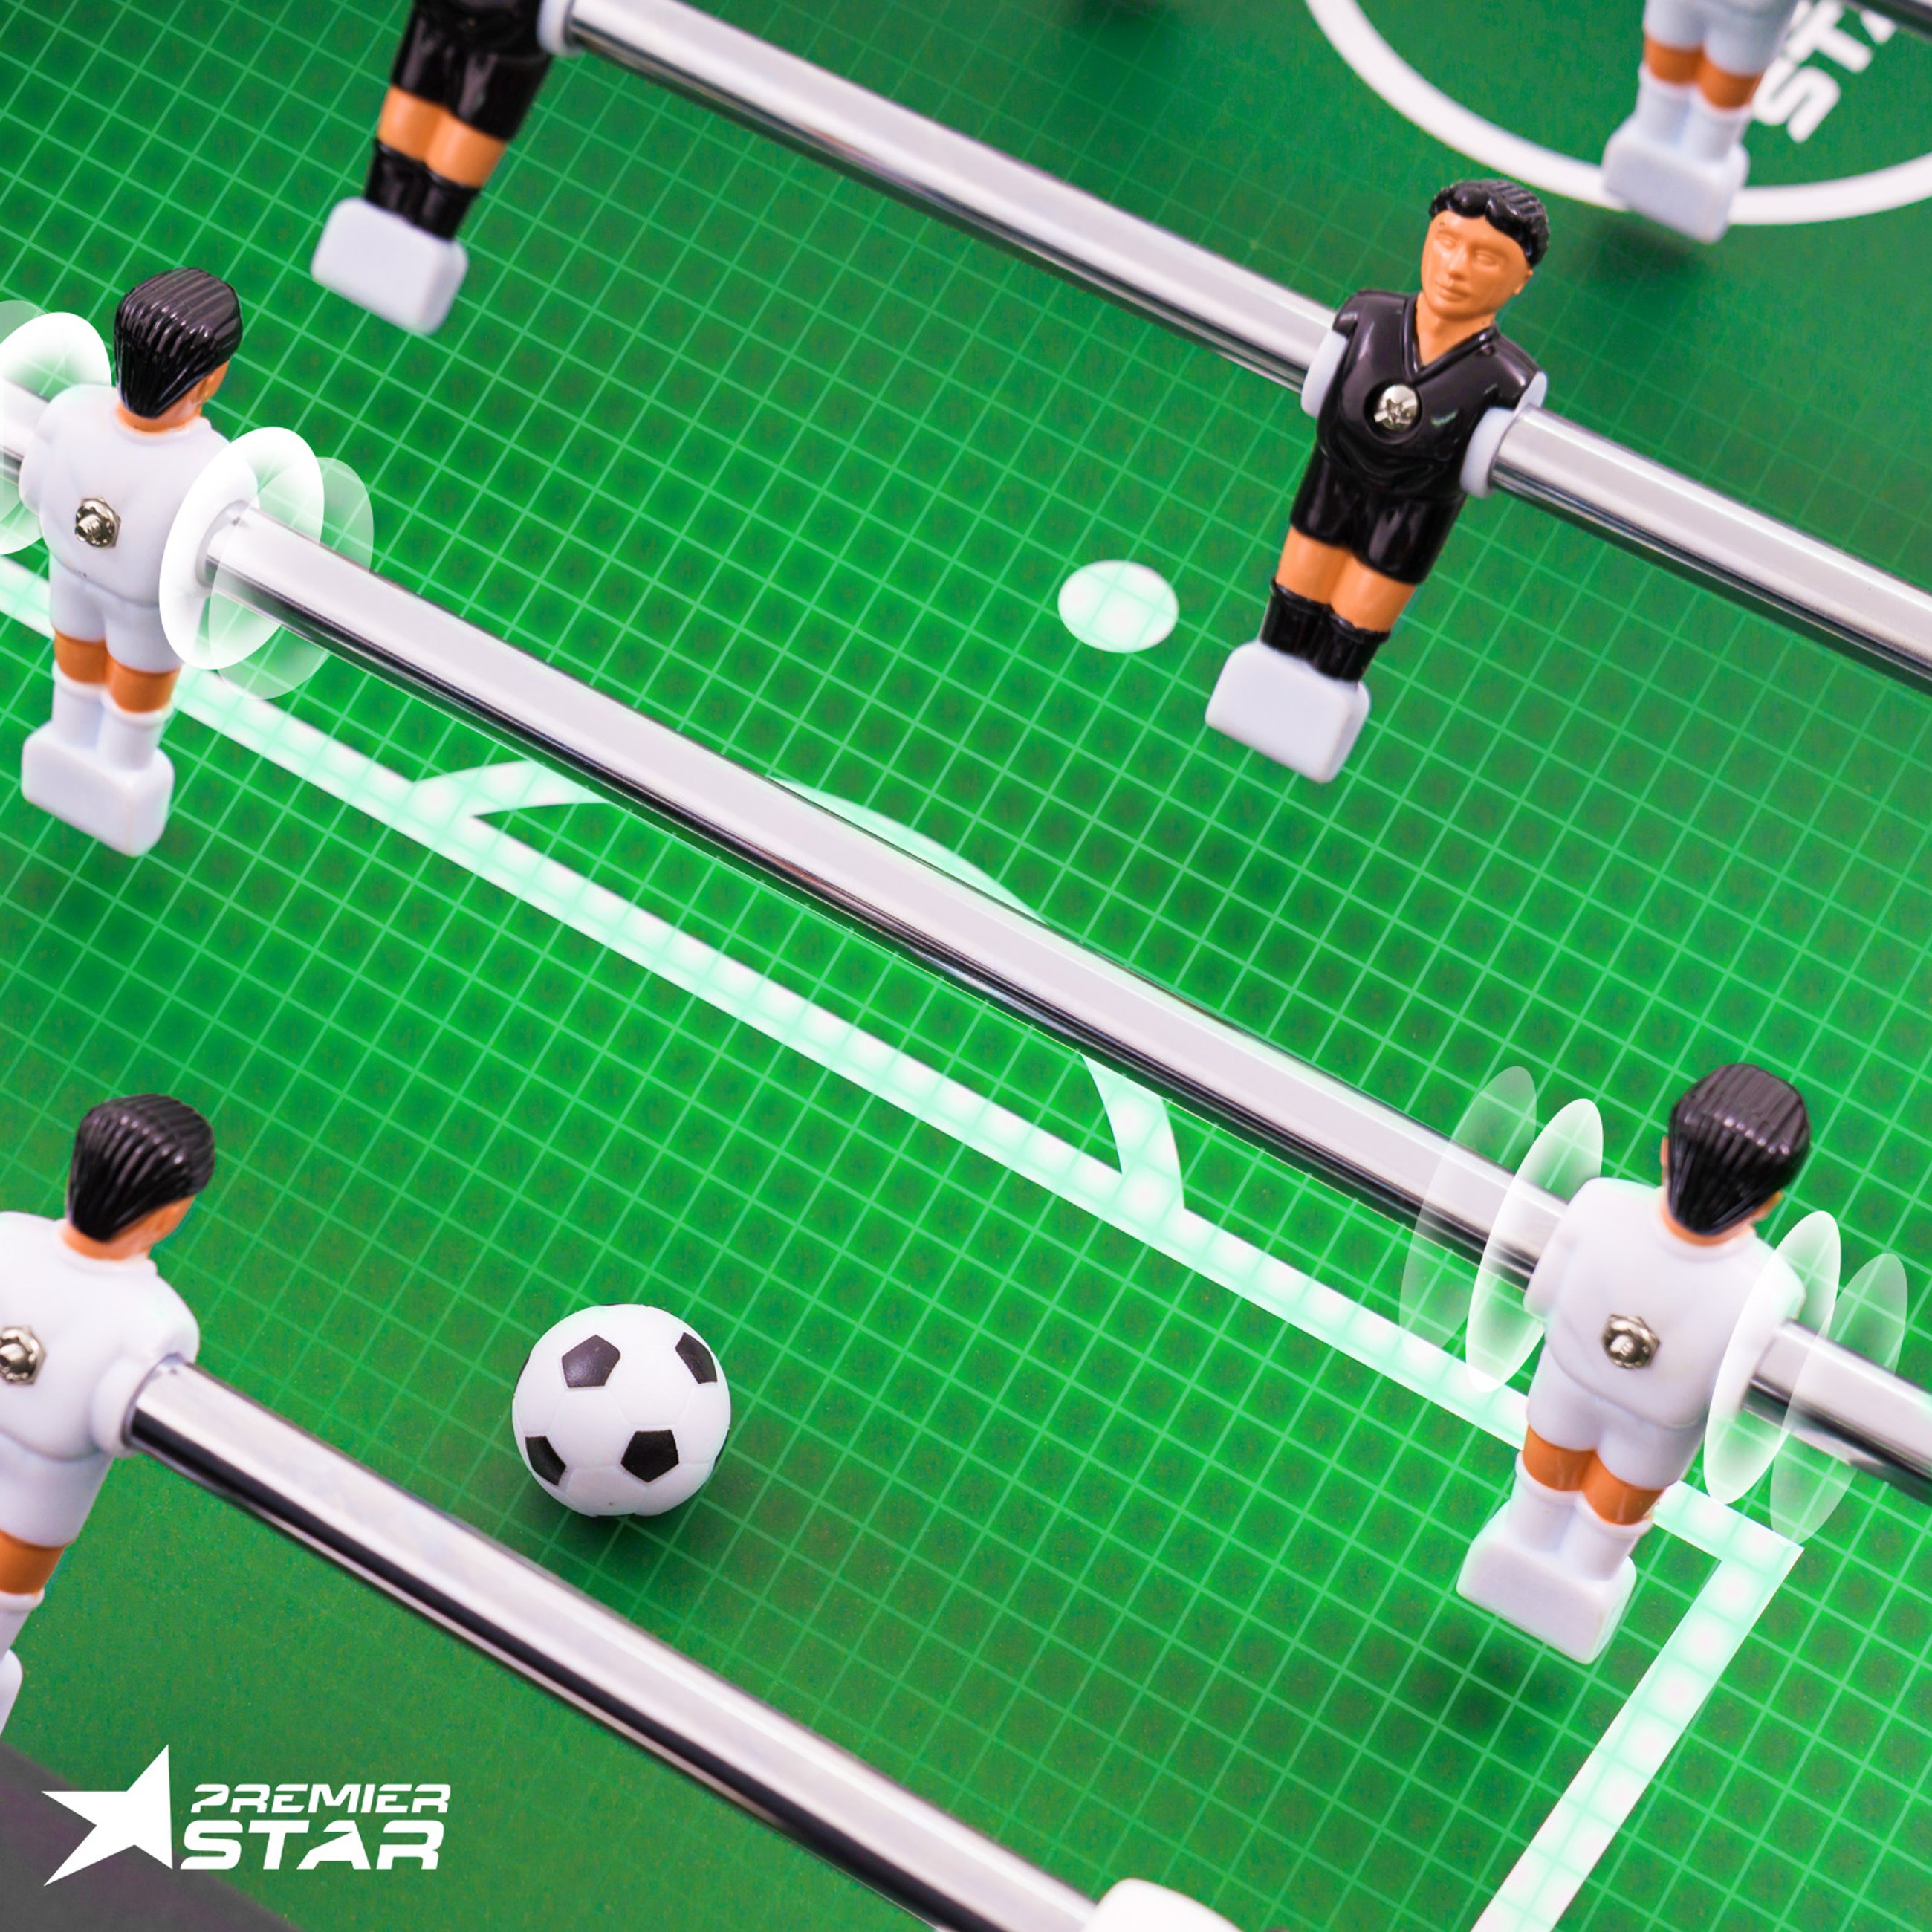 Spielfeld mit der neutralen, grünen Oberfläche, Spielfiguren auf verzinkt- und verchromten Hohlstangen, inklusive 3 Spielbälle